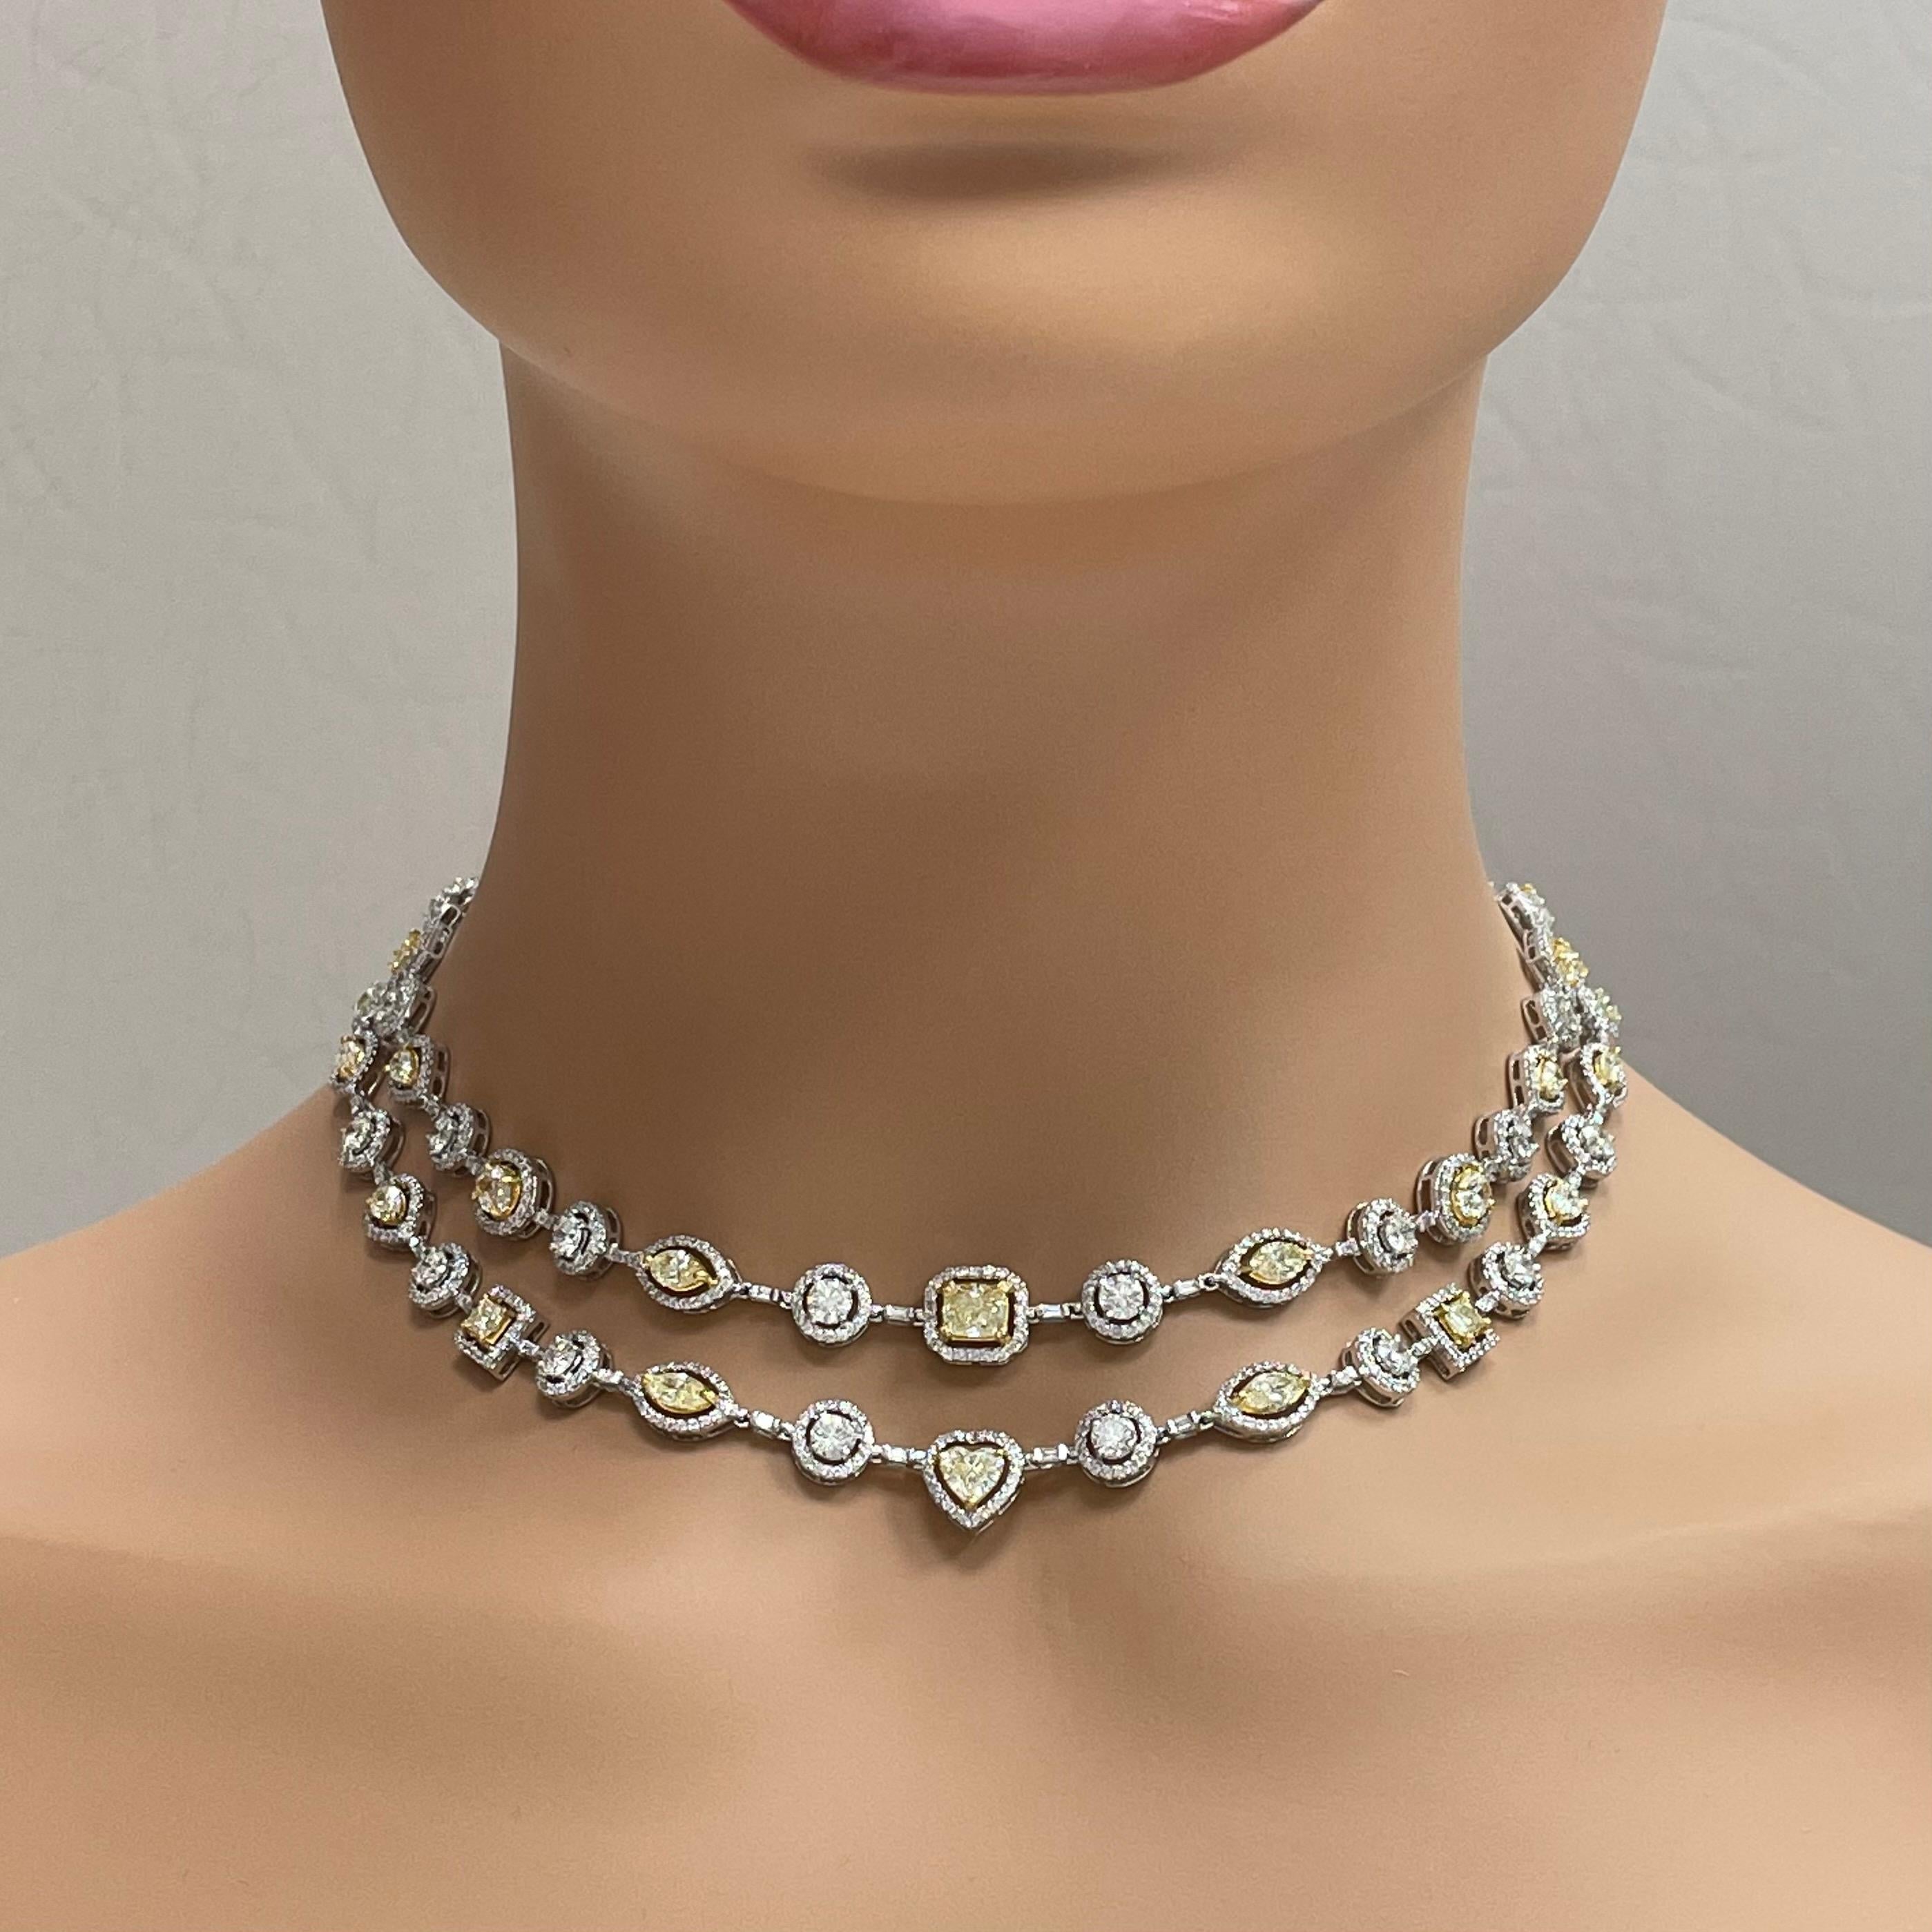 Die Beauvince Summer Yellow & White Diamond Necklace ist eine doppelreihige Halo-Halskette, die zart und extravagant ist. Es ist perfekt für einen Cocktail, eine Gala, eine Hochzeit oder den roten Teppich.

Diamanten-Formen: Kissen, Trilliant,